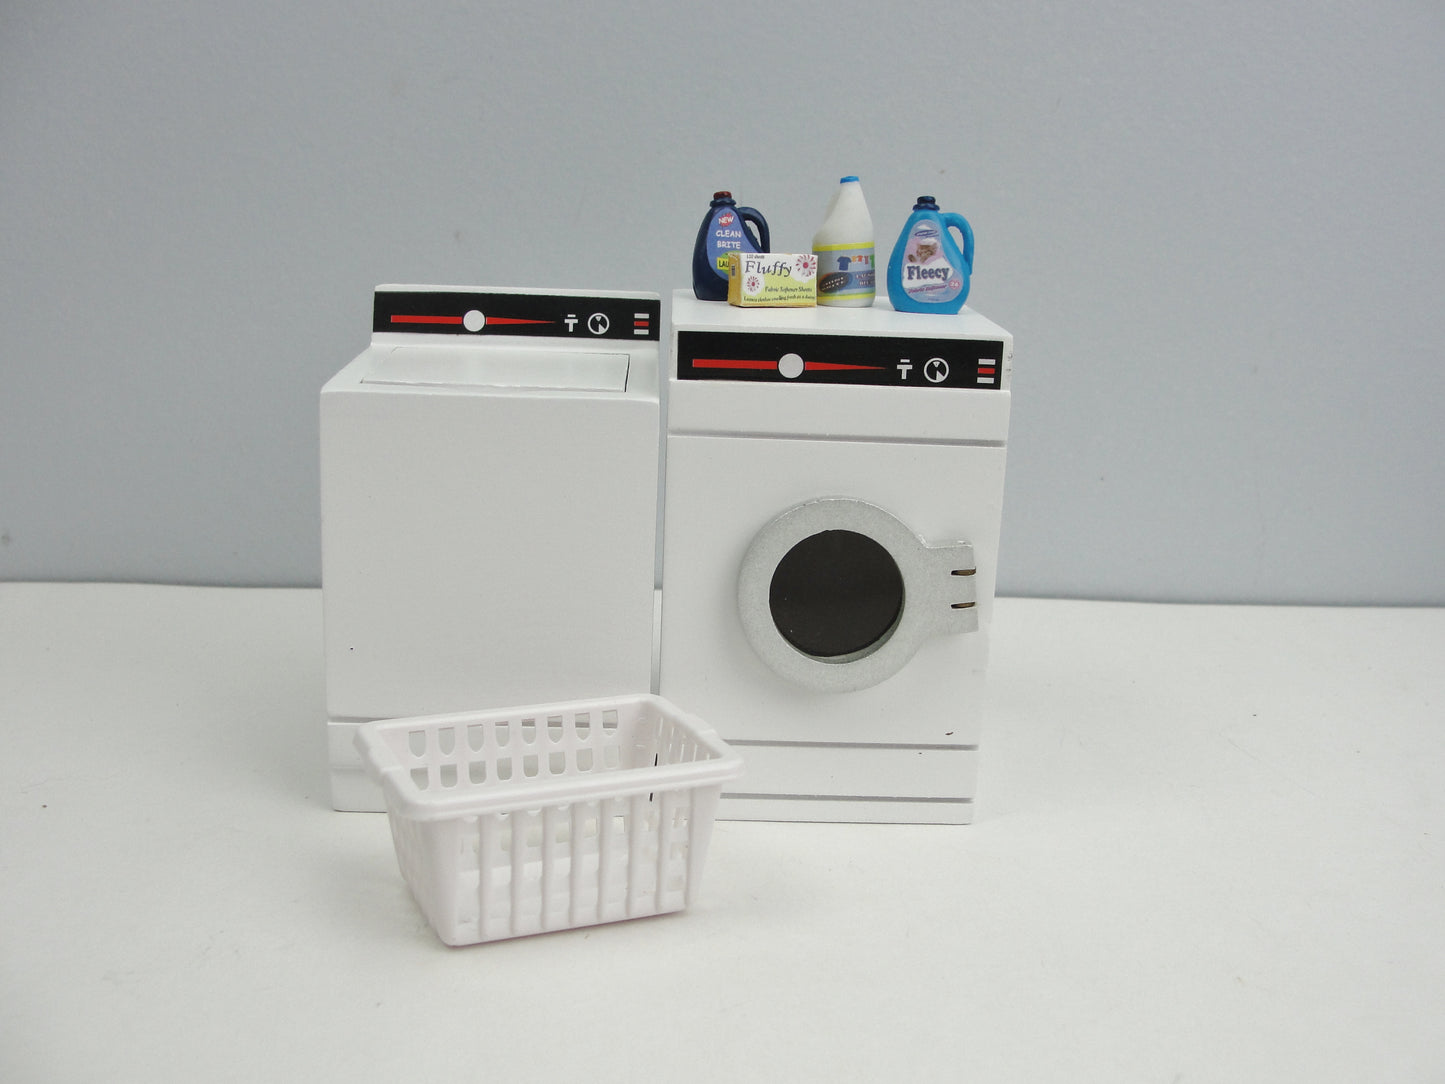 Dollhouse laundry washer, dryer, detergent, laundry basket